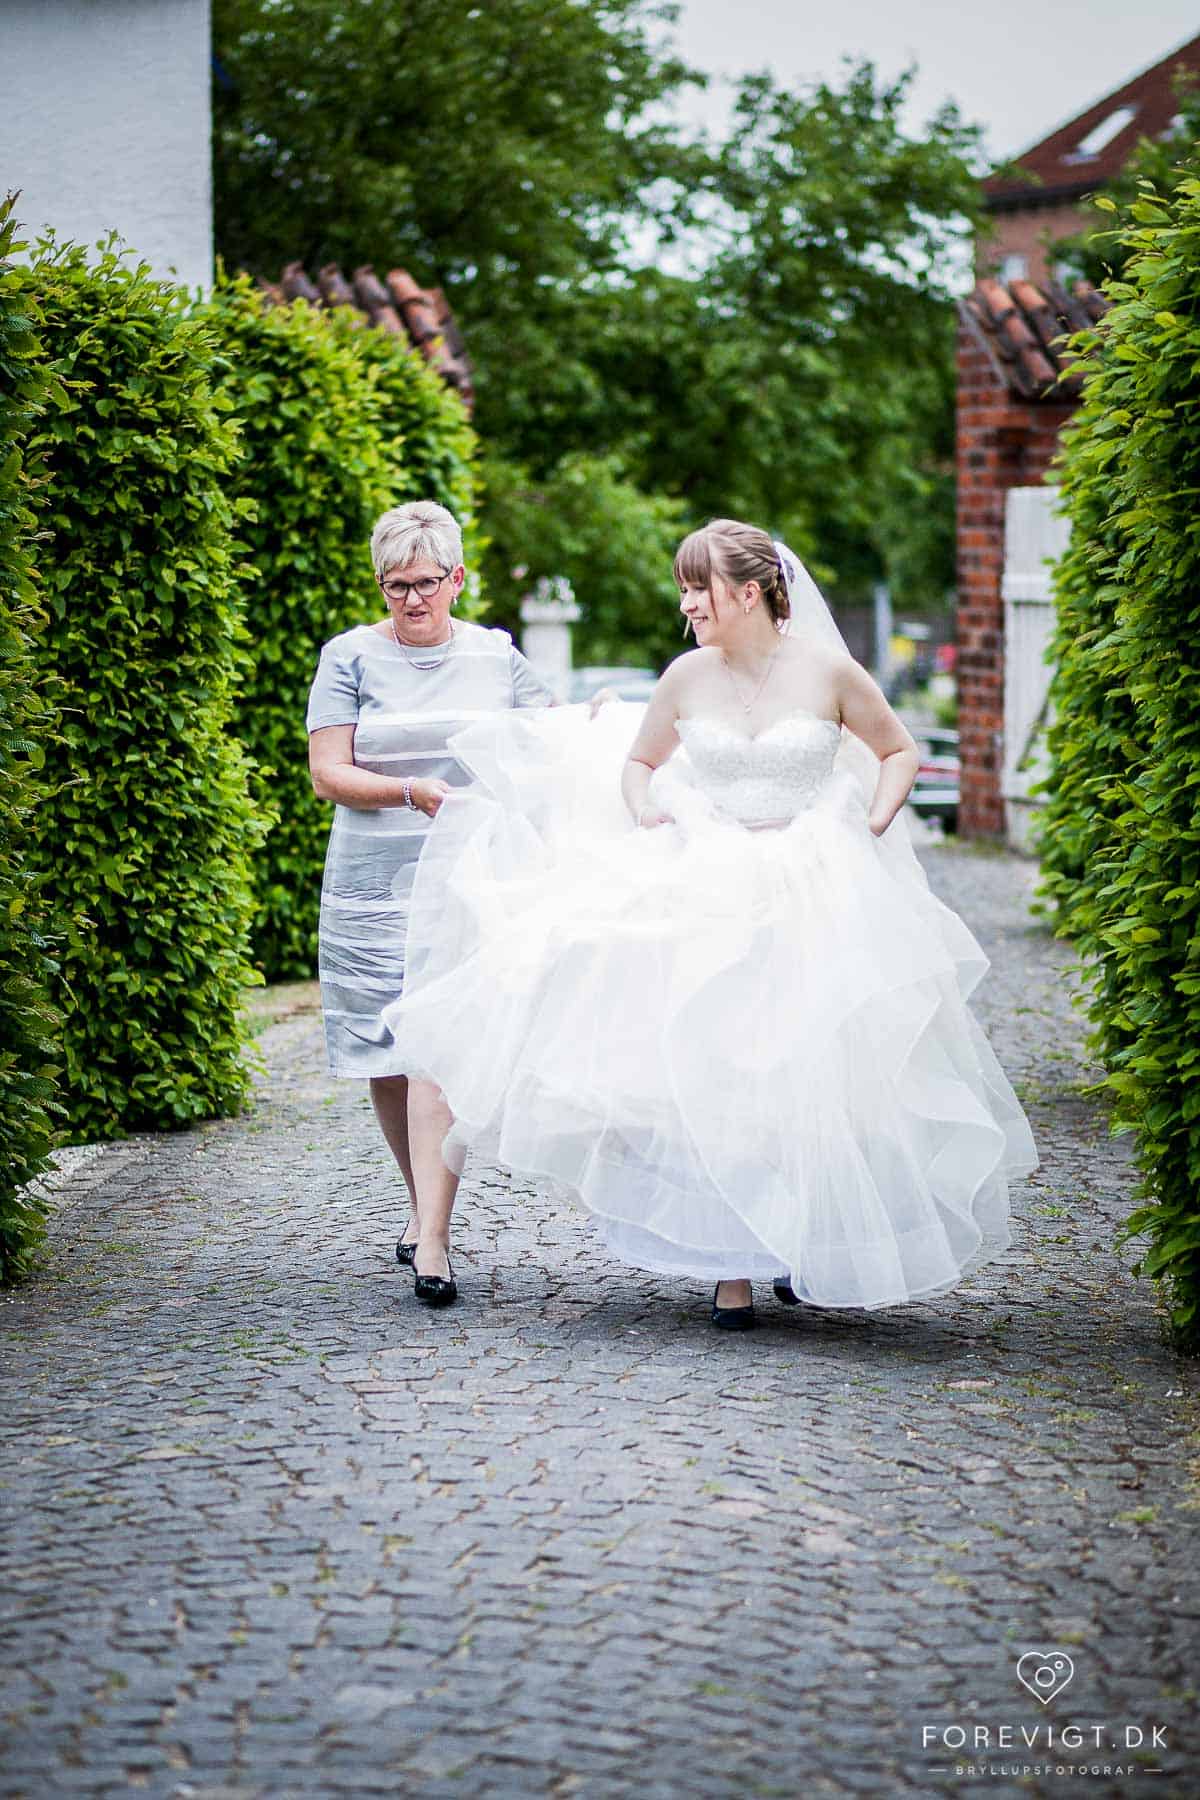 Bryllupsfotograf København: Danmarks bedste bryllupsfotograf